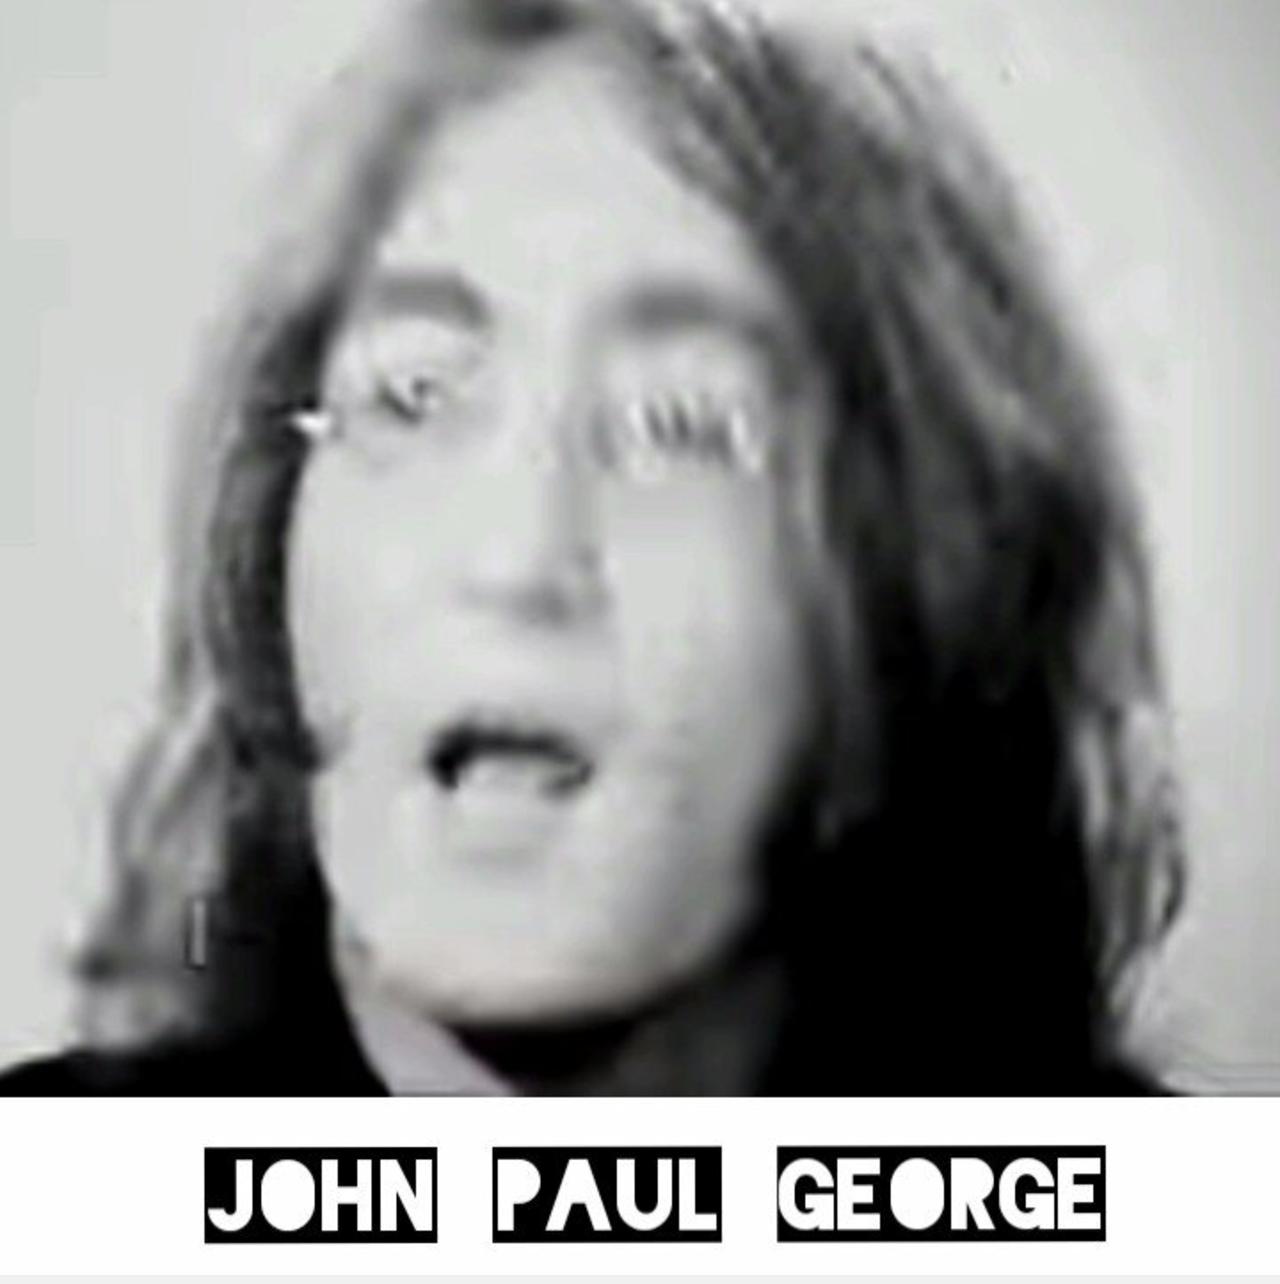 JOHN, PAUL, GEORGE